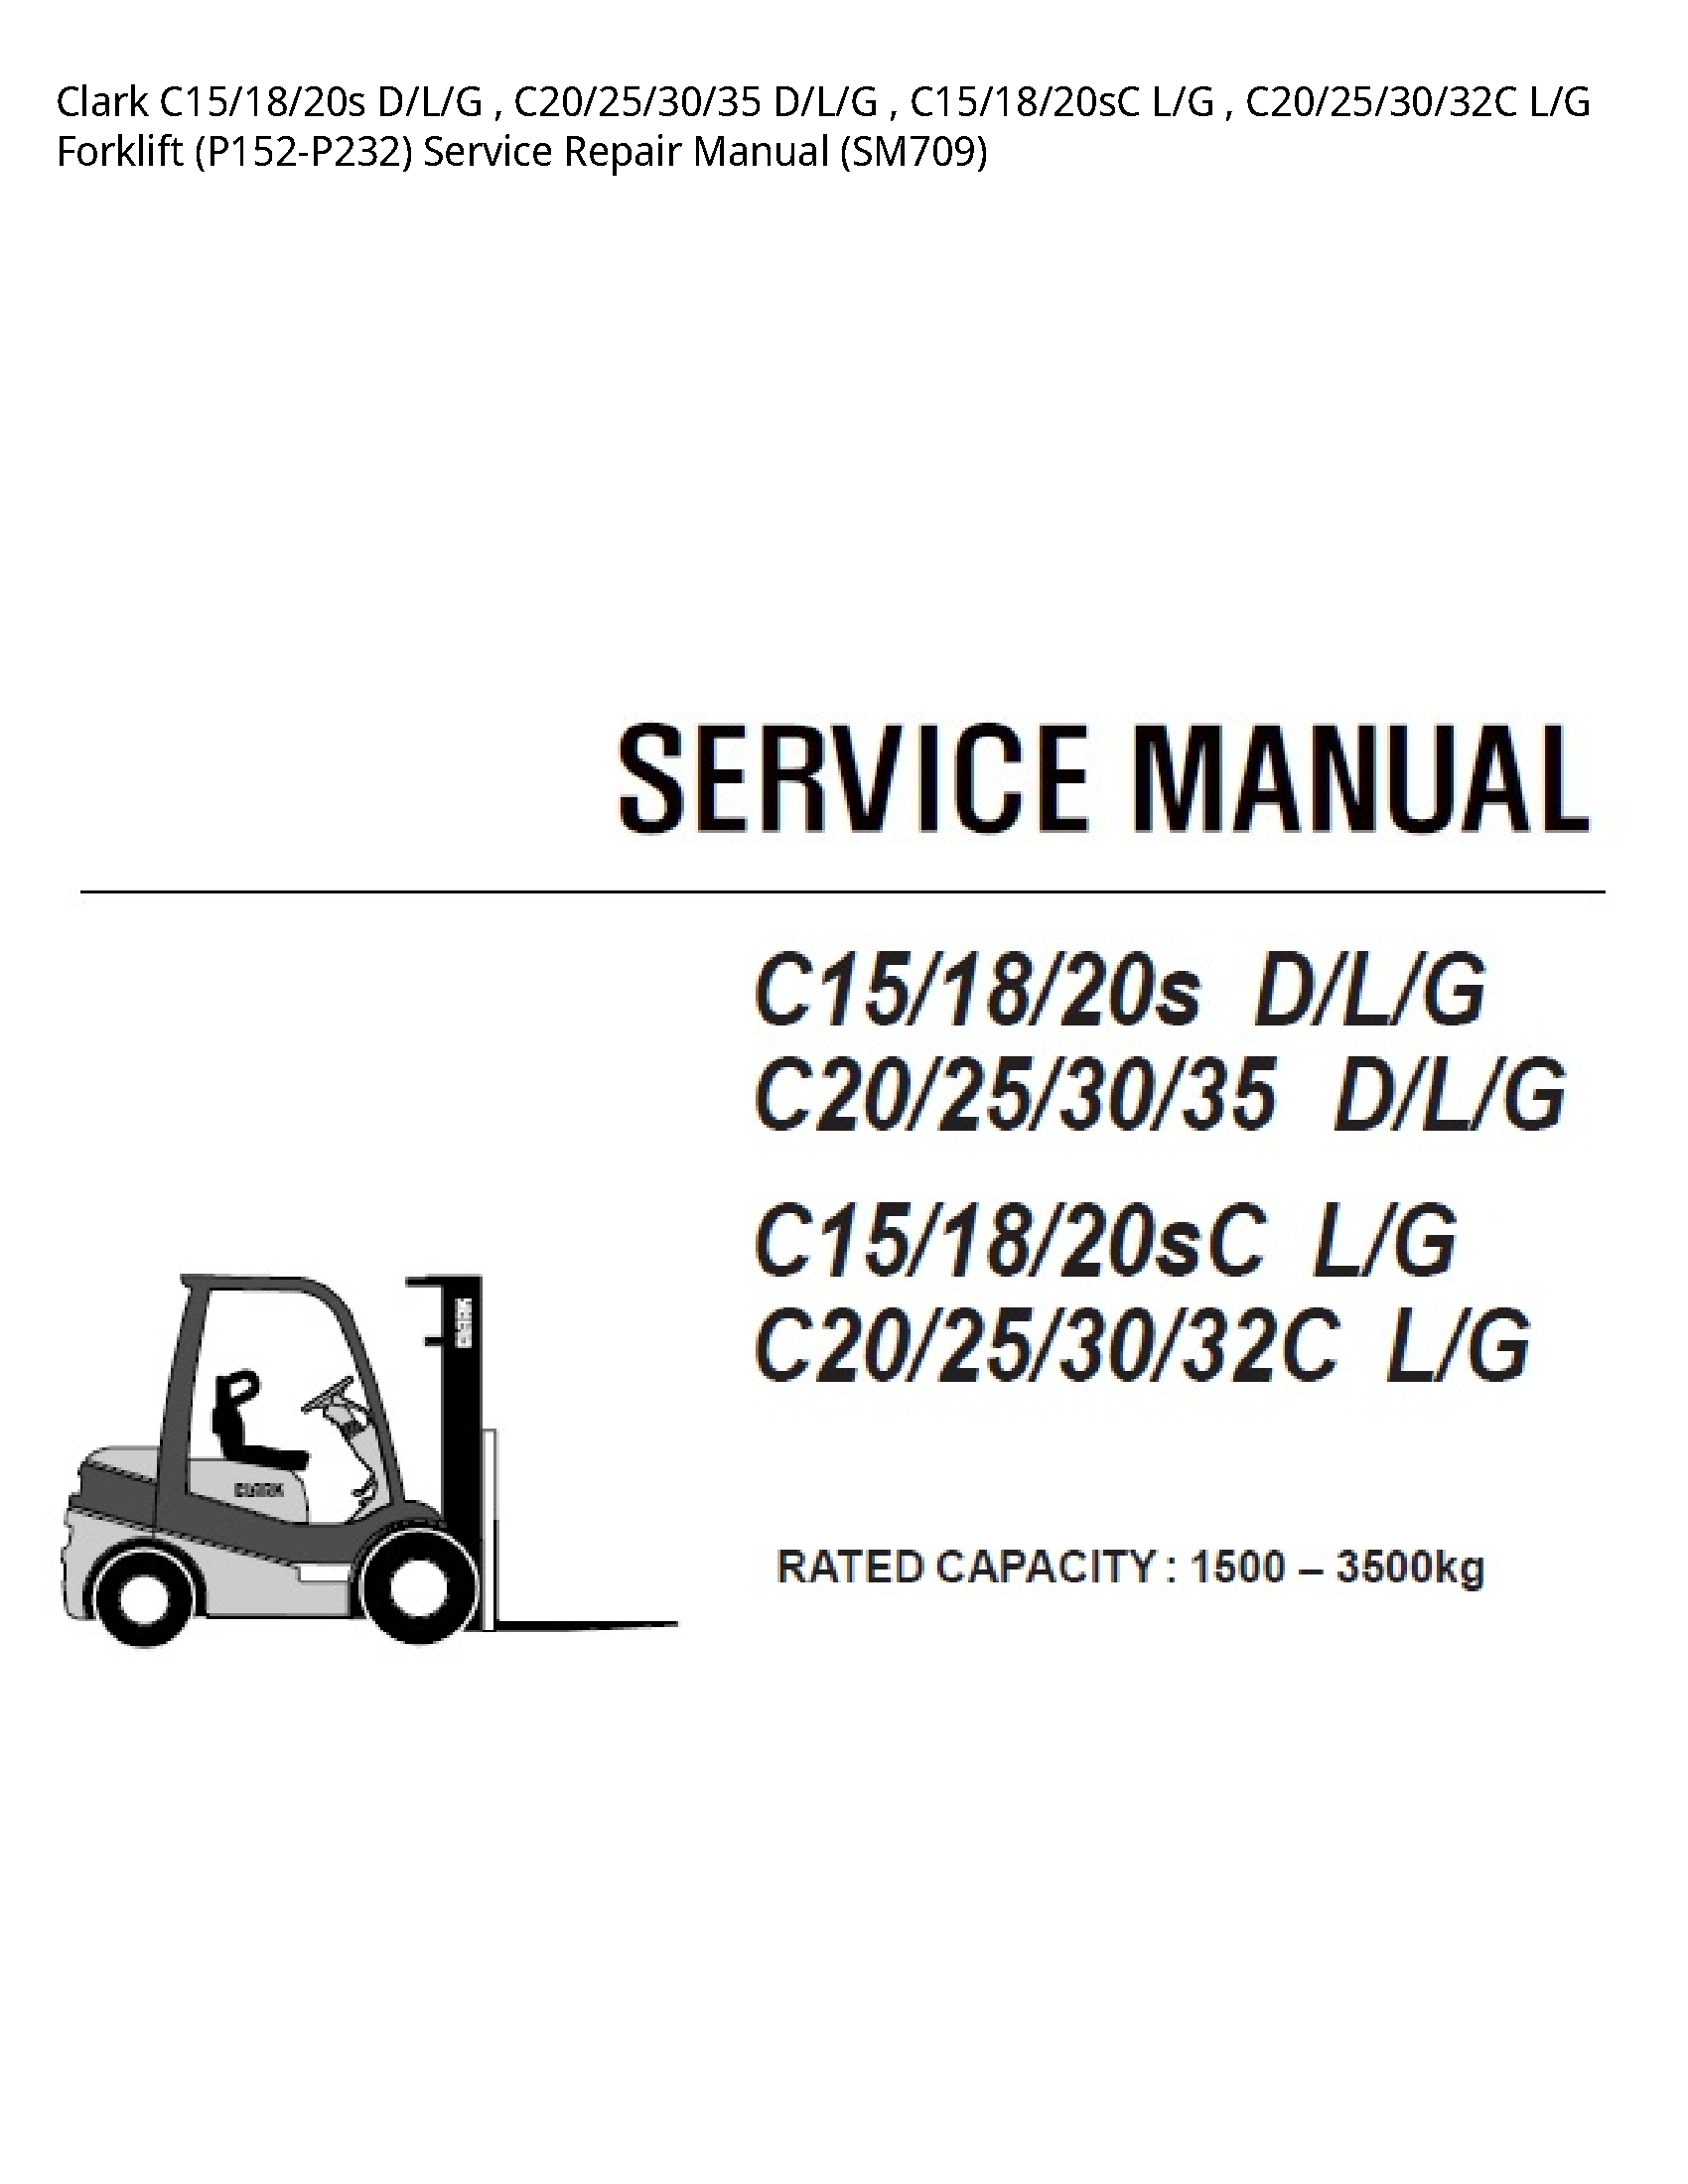 Clark C15 D/L/G D/L/G L/G L/G Forklift manual